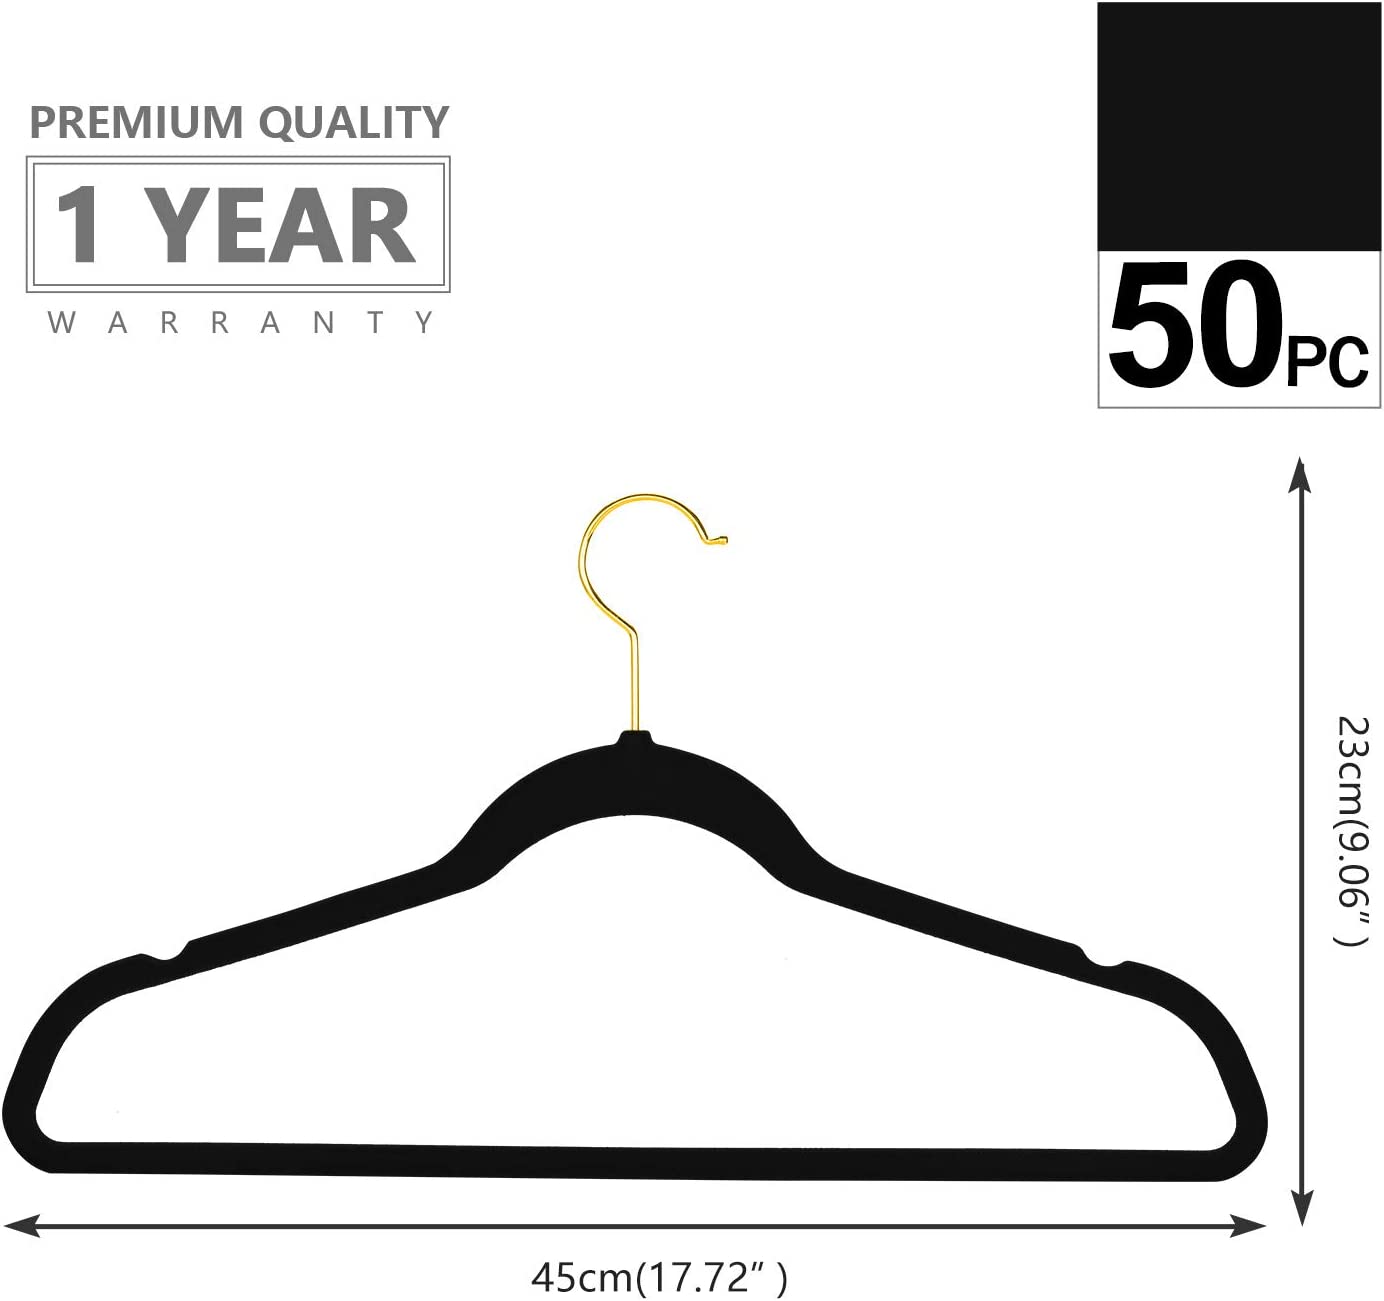 Flysums Premium Velvet Hangers 50 Pack, Heavy Duty Study Black